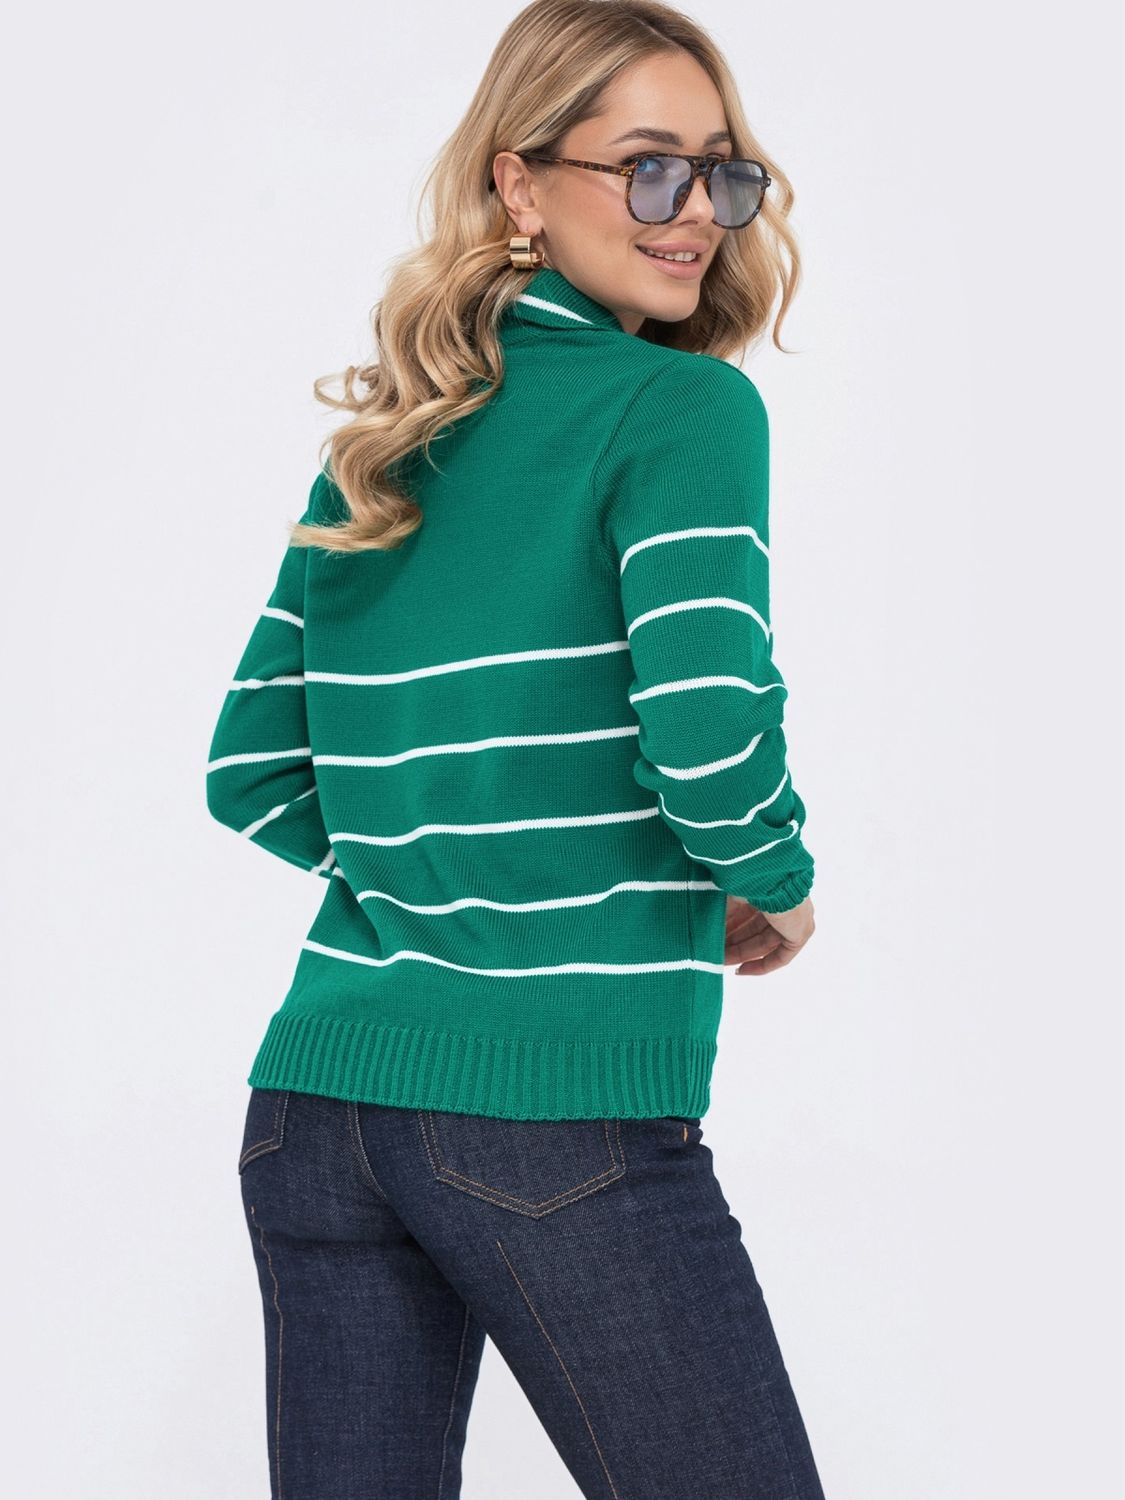 Жіночий пуловер в'язаний зеленого кольору - фото